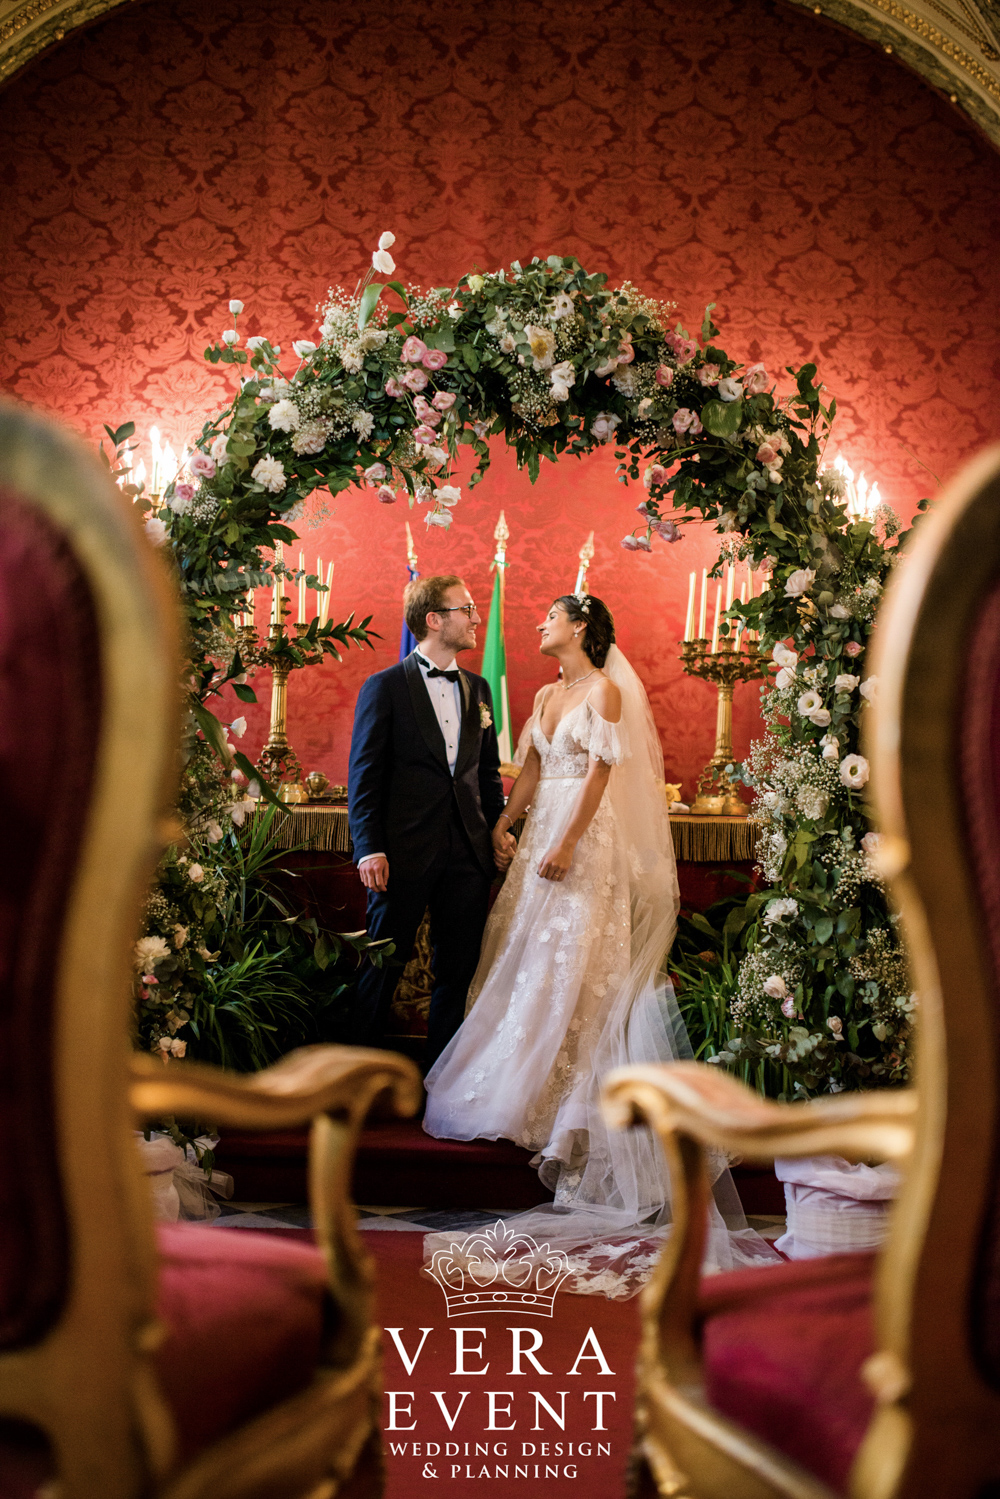 İpek & Emir #yurtdışında düğün #roma'da düğün